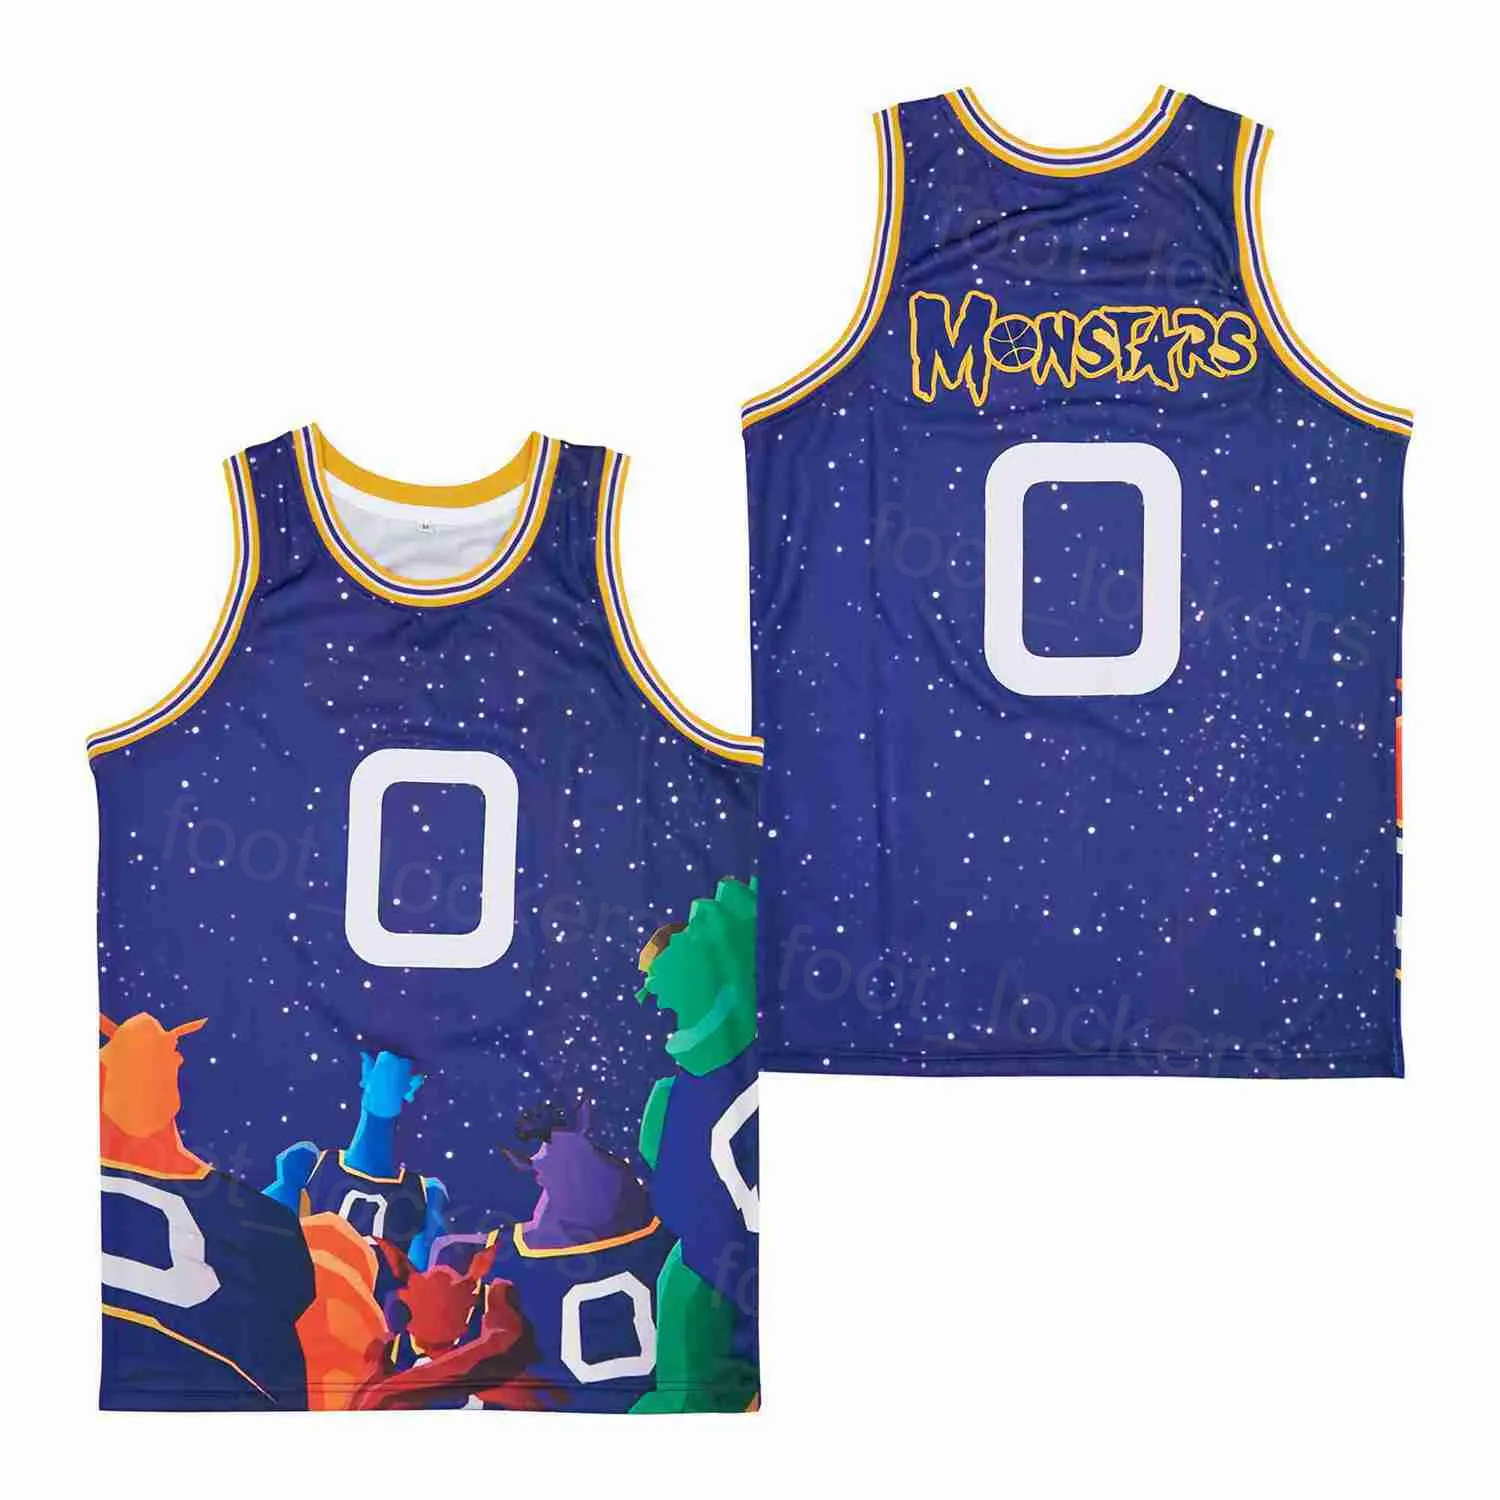 영화 농구 0 Monstars 영화 저지 남성 우주 잼 튜닝 스포츠 팬을위한 레트로 힙합 통기 가능한 팀 보라색 순수 면화 대학 고등학교 셔츠